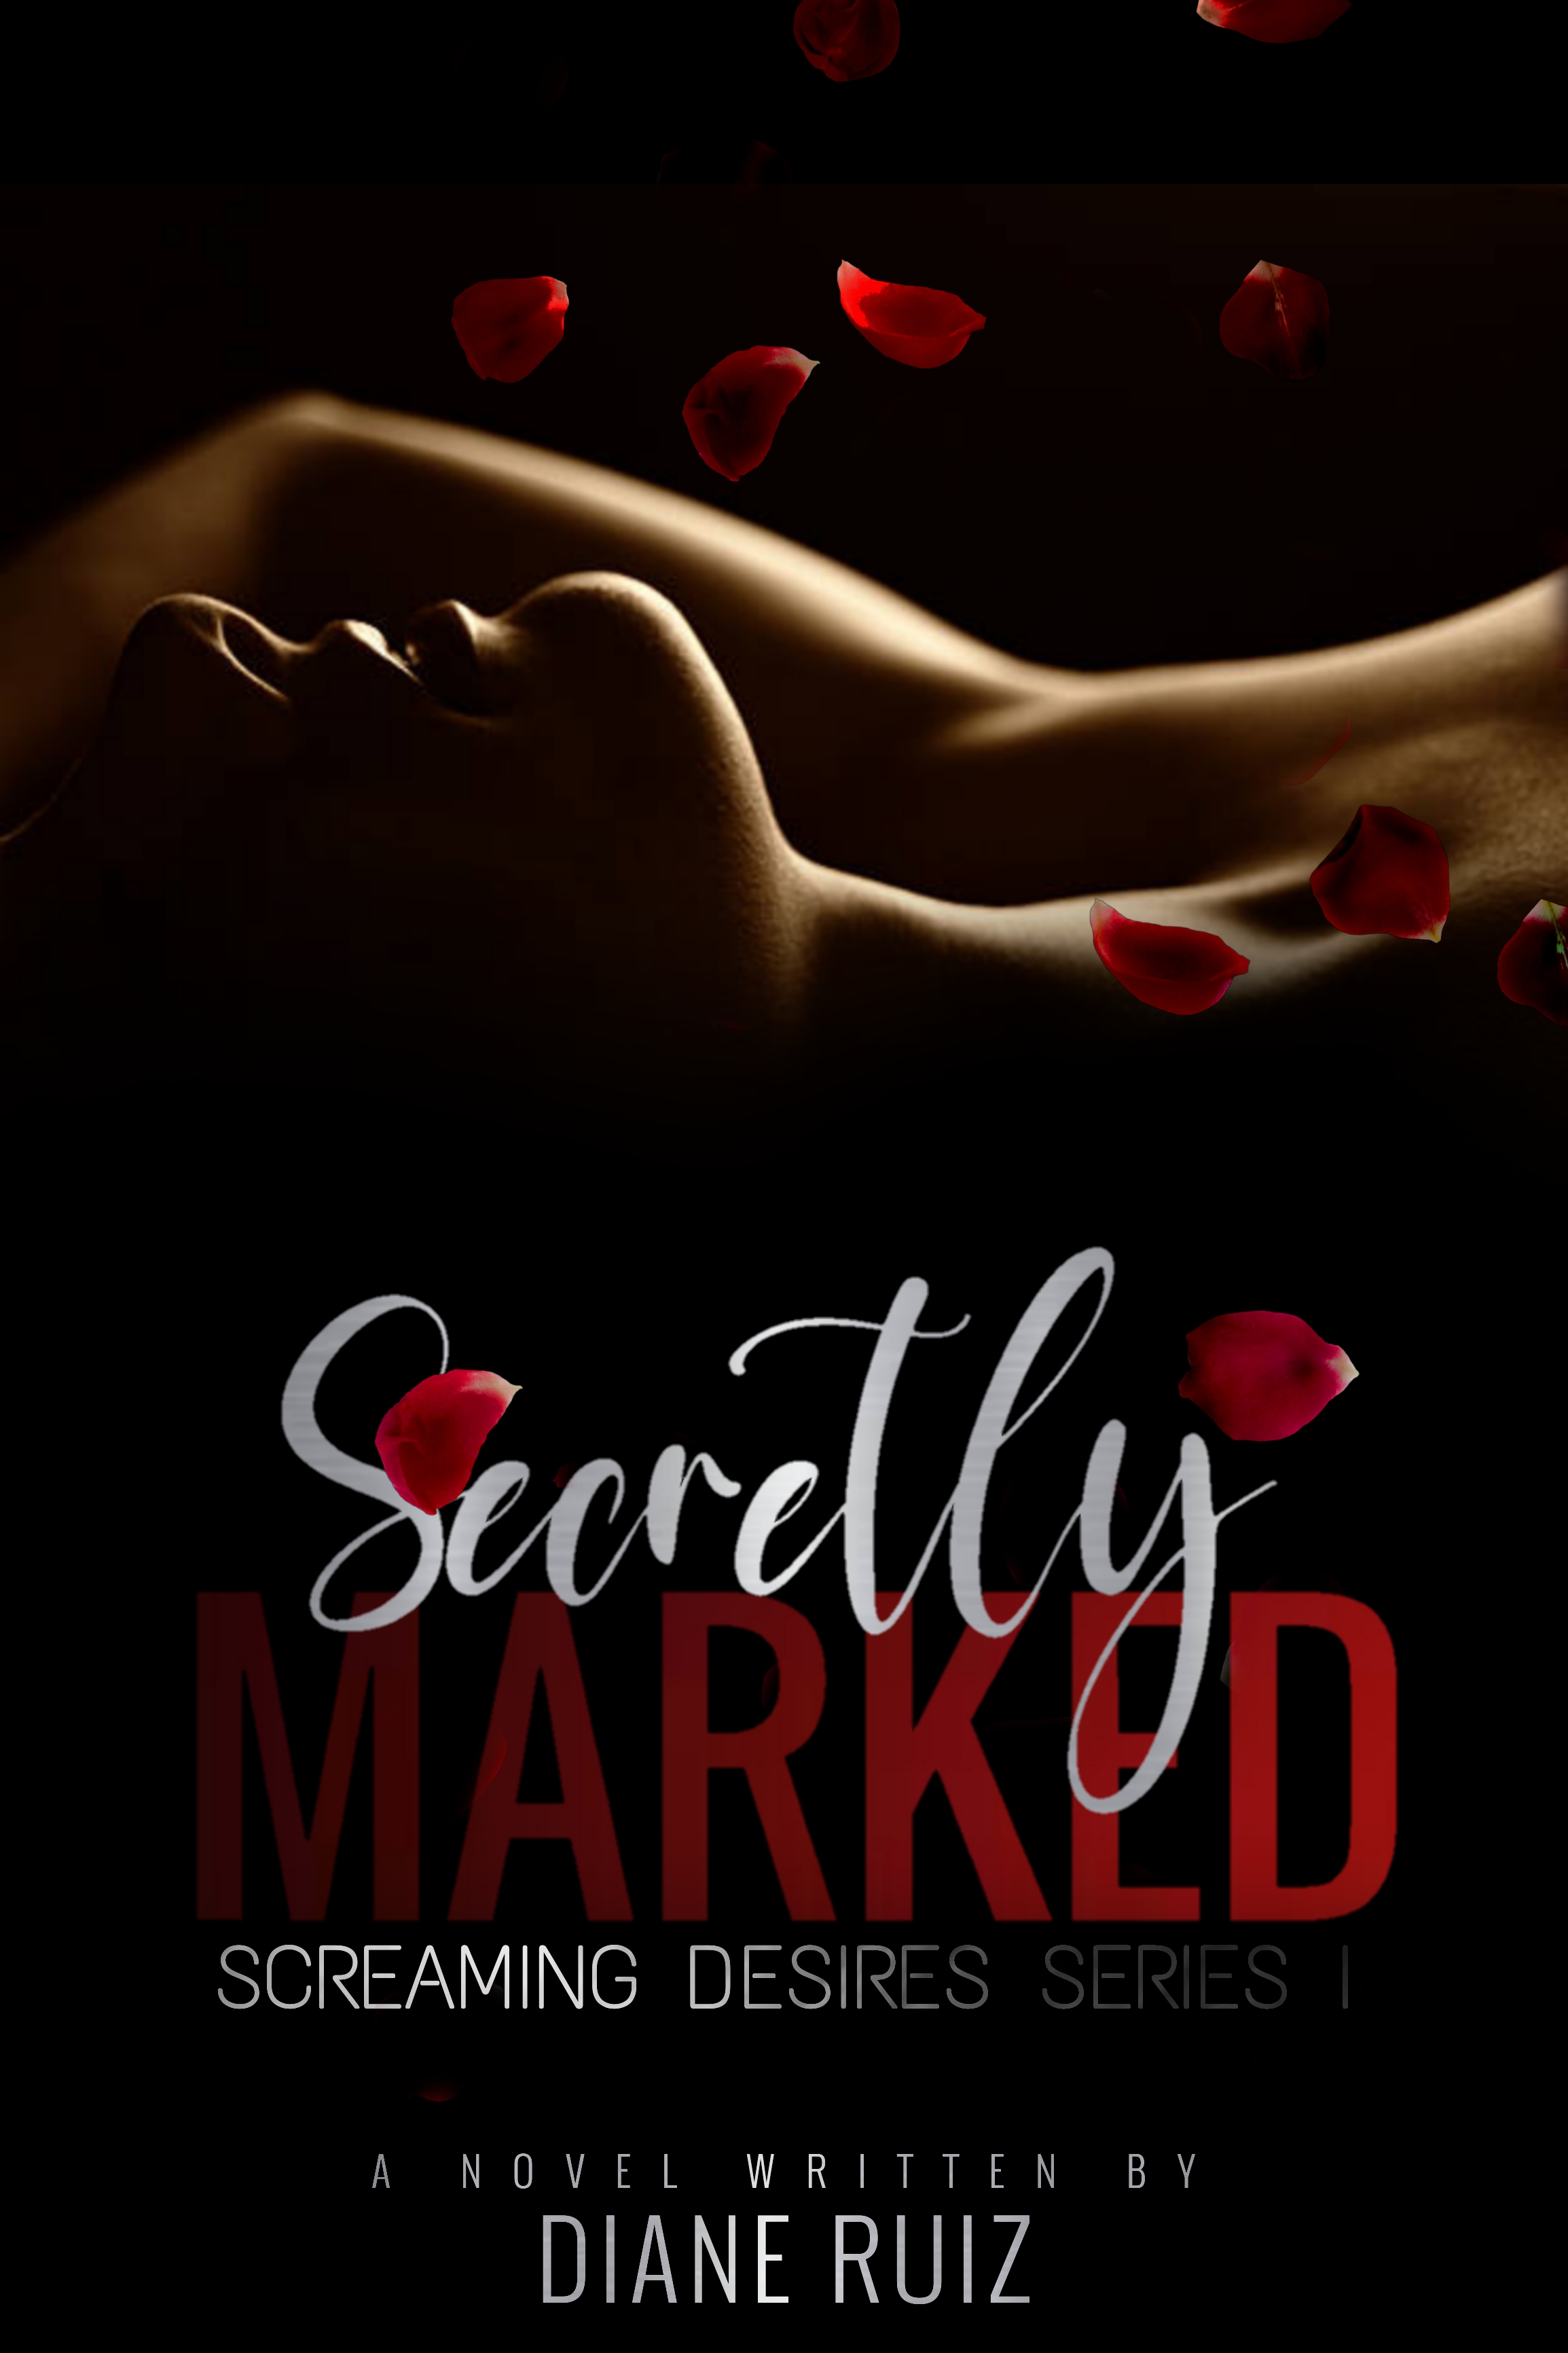 Screaming Desires Series 1: Secretly Marked